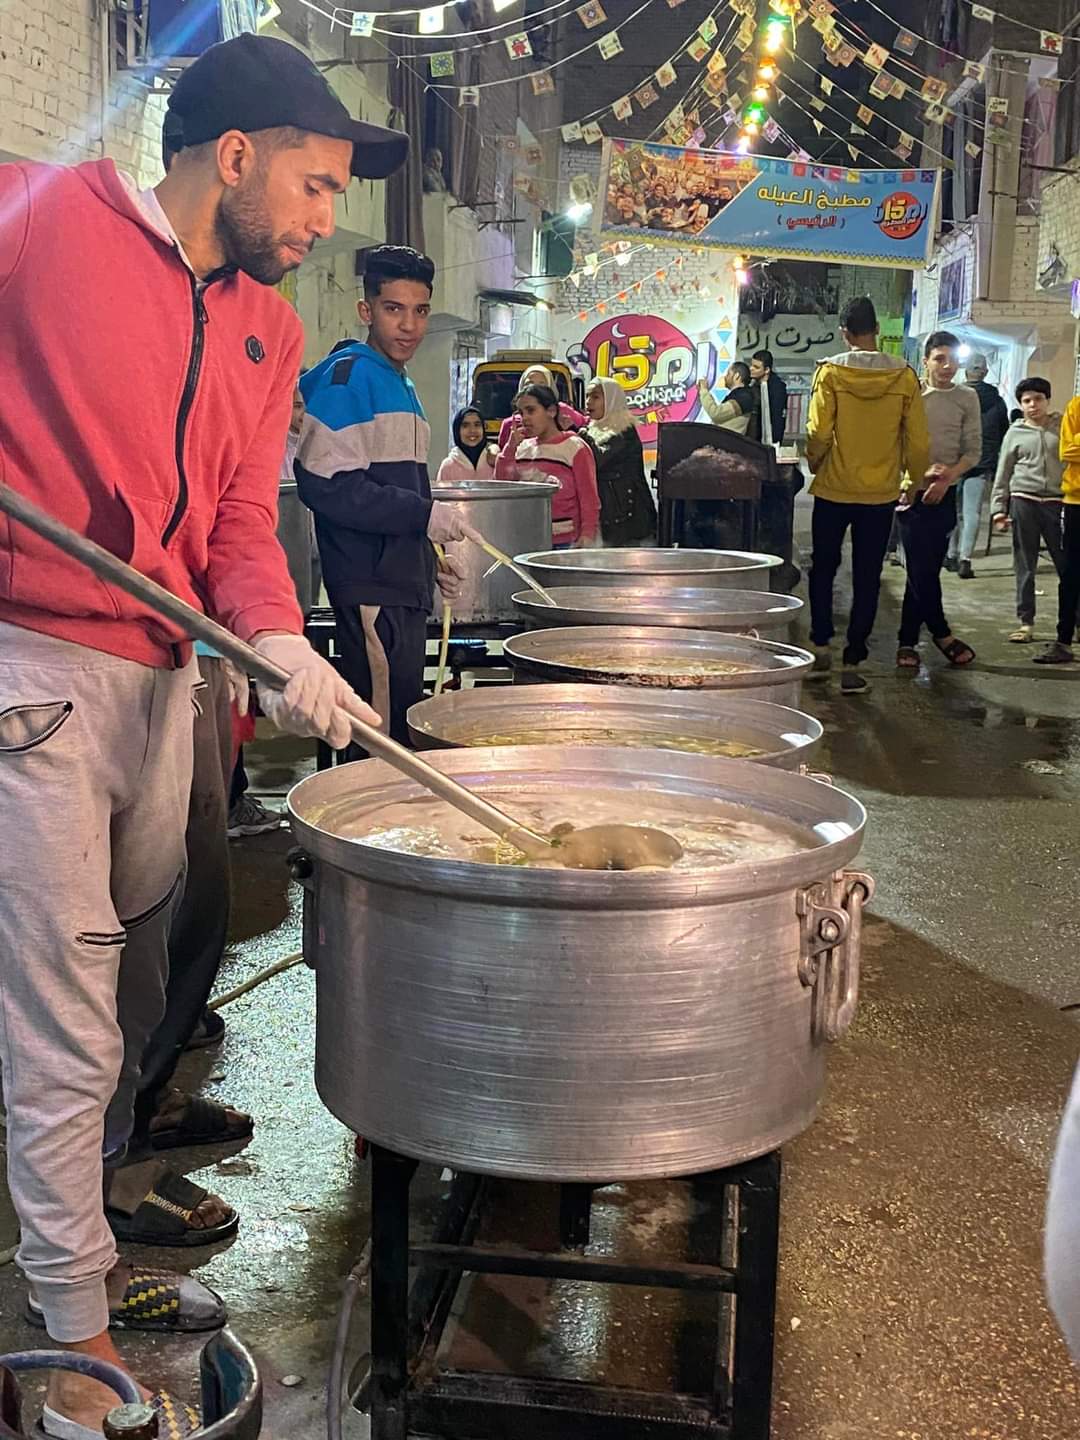 للسنة التاسعة المطرية بتفرح.. إفطار رمضان بمائدة عالمية على أراضي مصرية 7